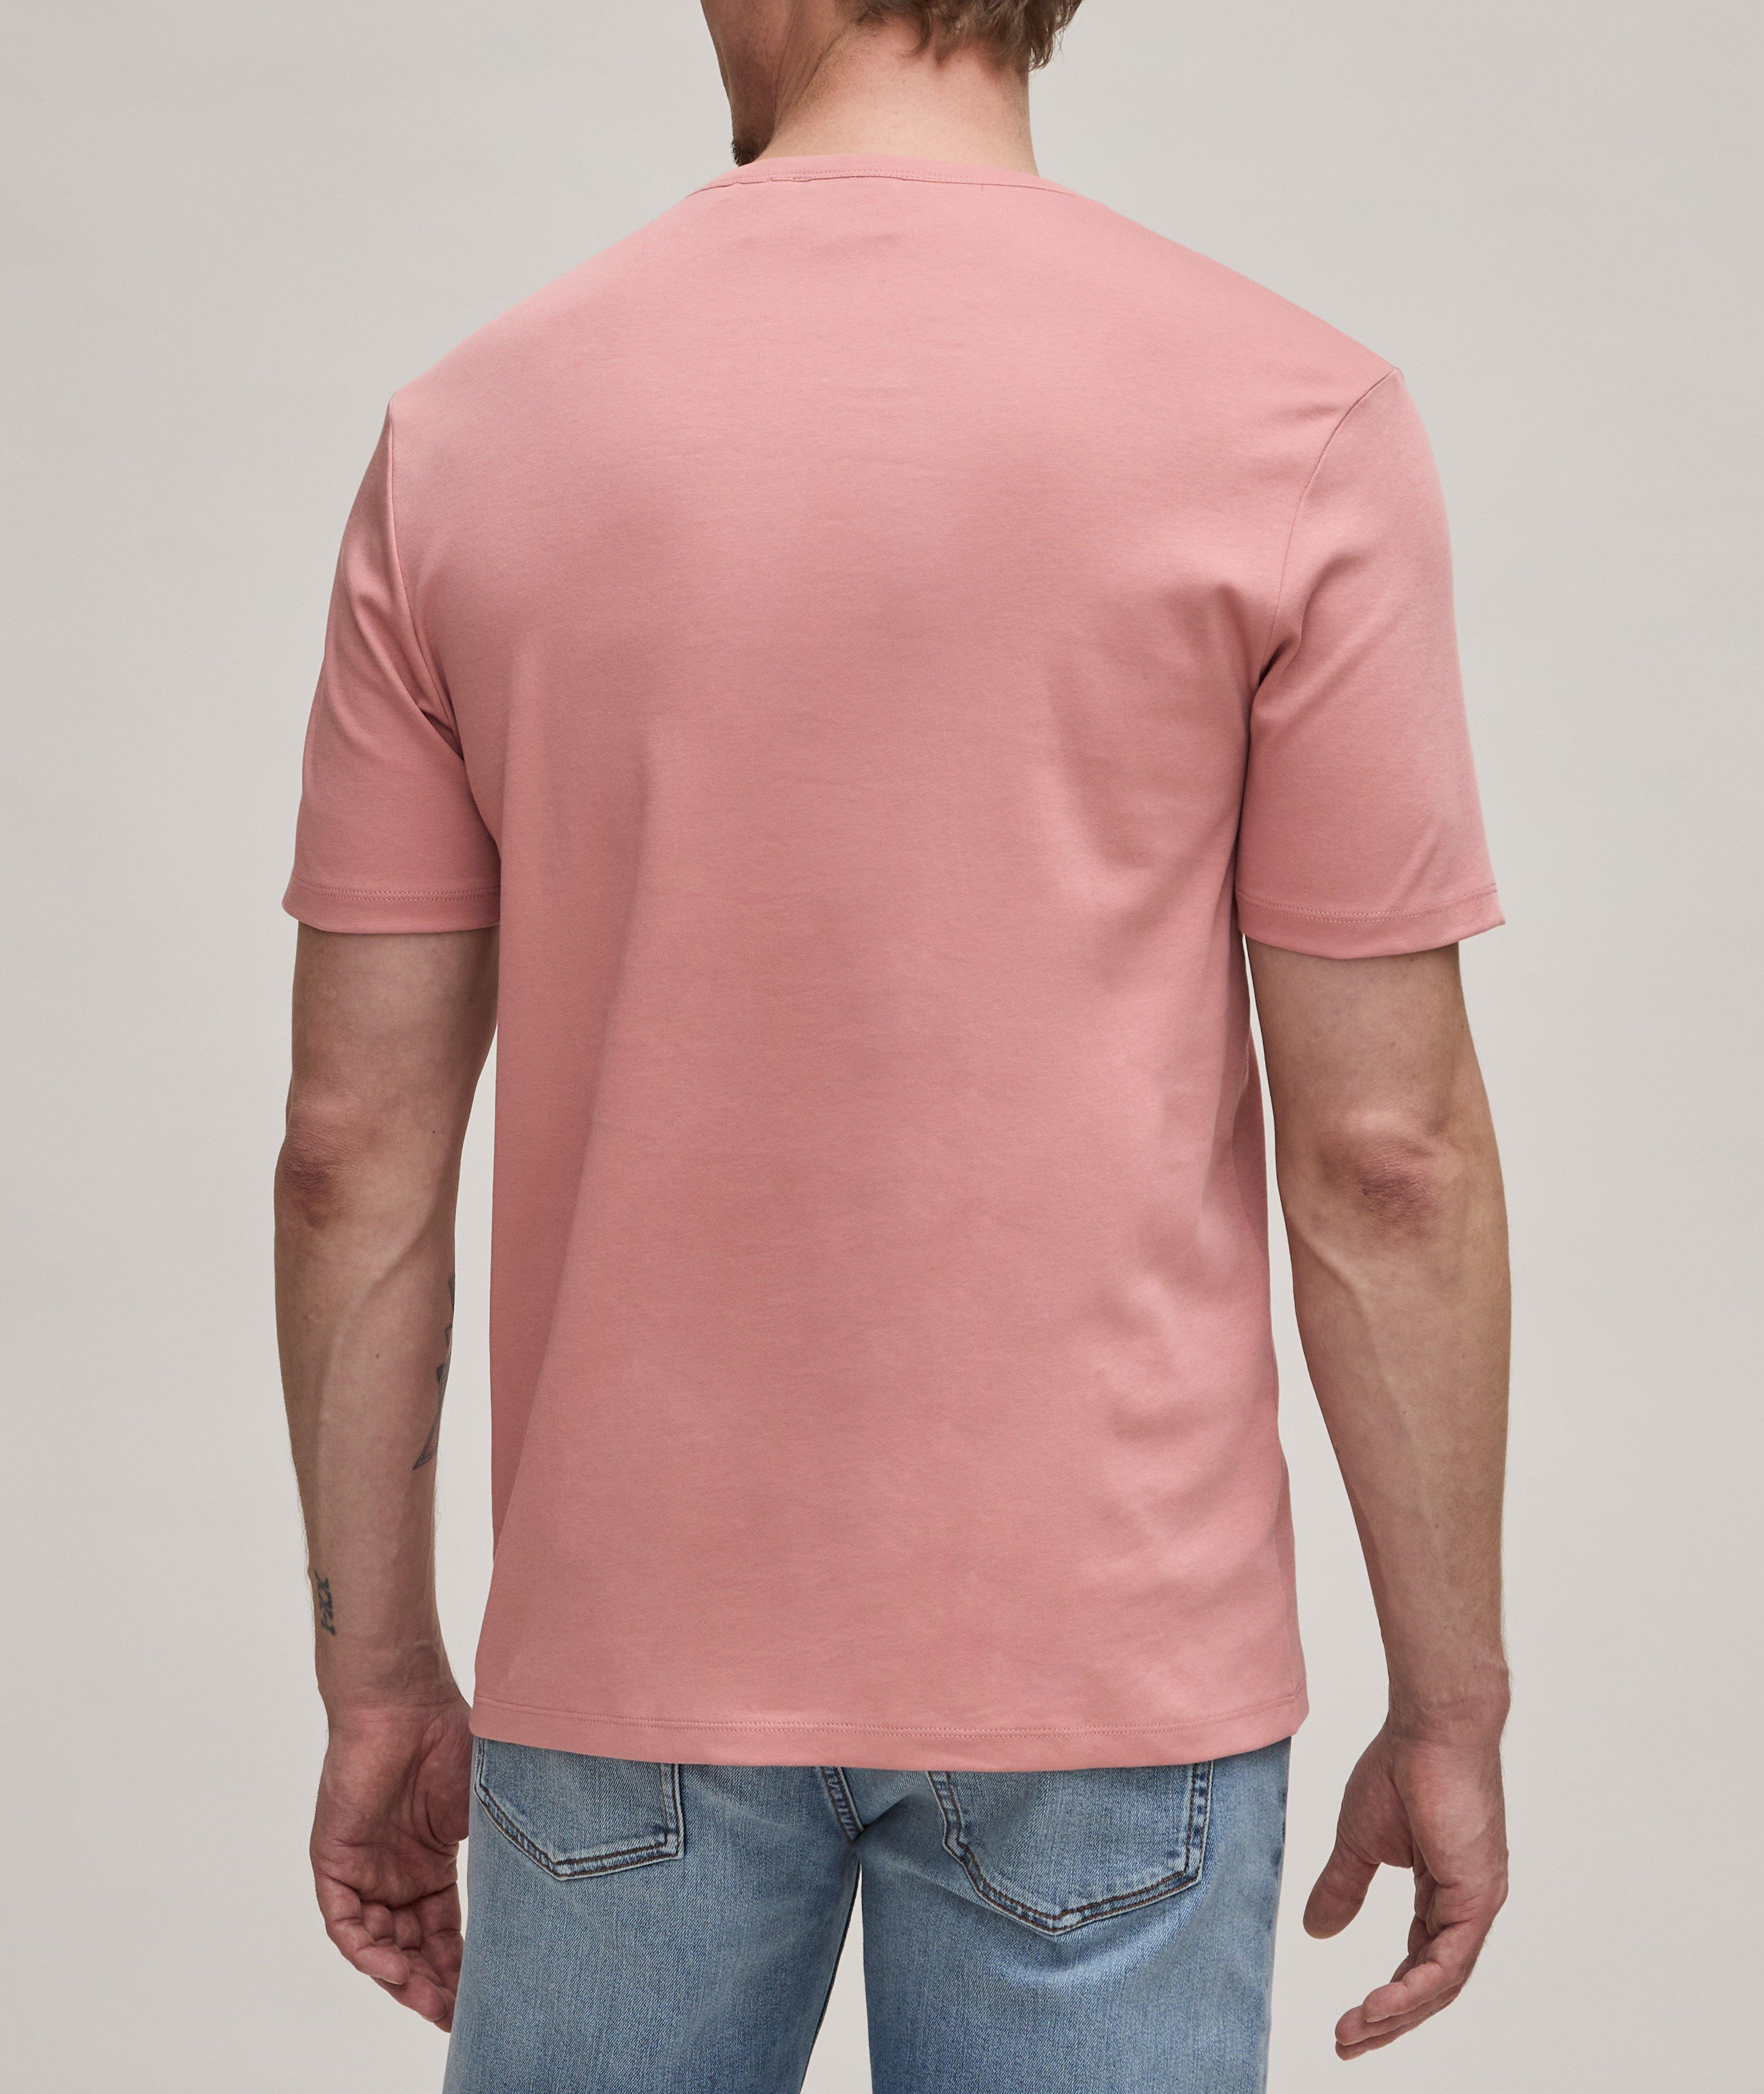 Dozy Cotton T-Shirt image 2